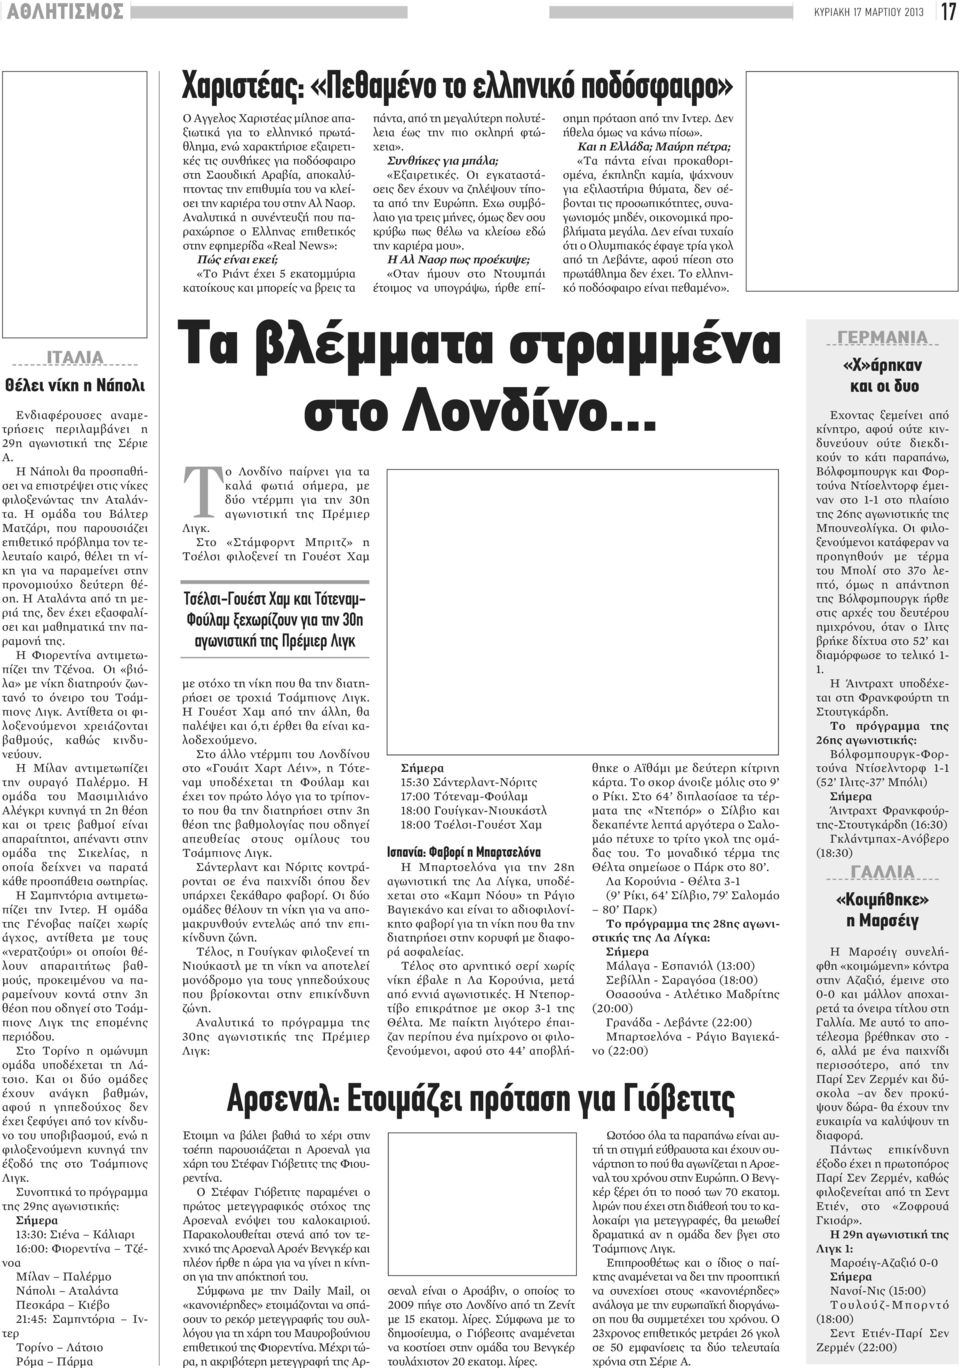 Αναλυτικά η συνέντευξή που παραχώρησε ο Ελληνας επιθετικός στην εφημερίδα «Real News»: Πώς είναι εκεί; «Το Ριάντ έχει 5 εκατομμύρια κατοίκους και μπορείς να βρεις τα πάντα, από τη μεγαλύτερη